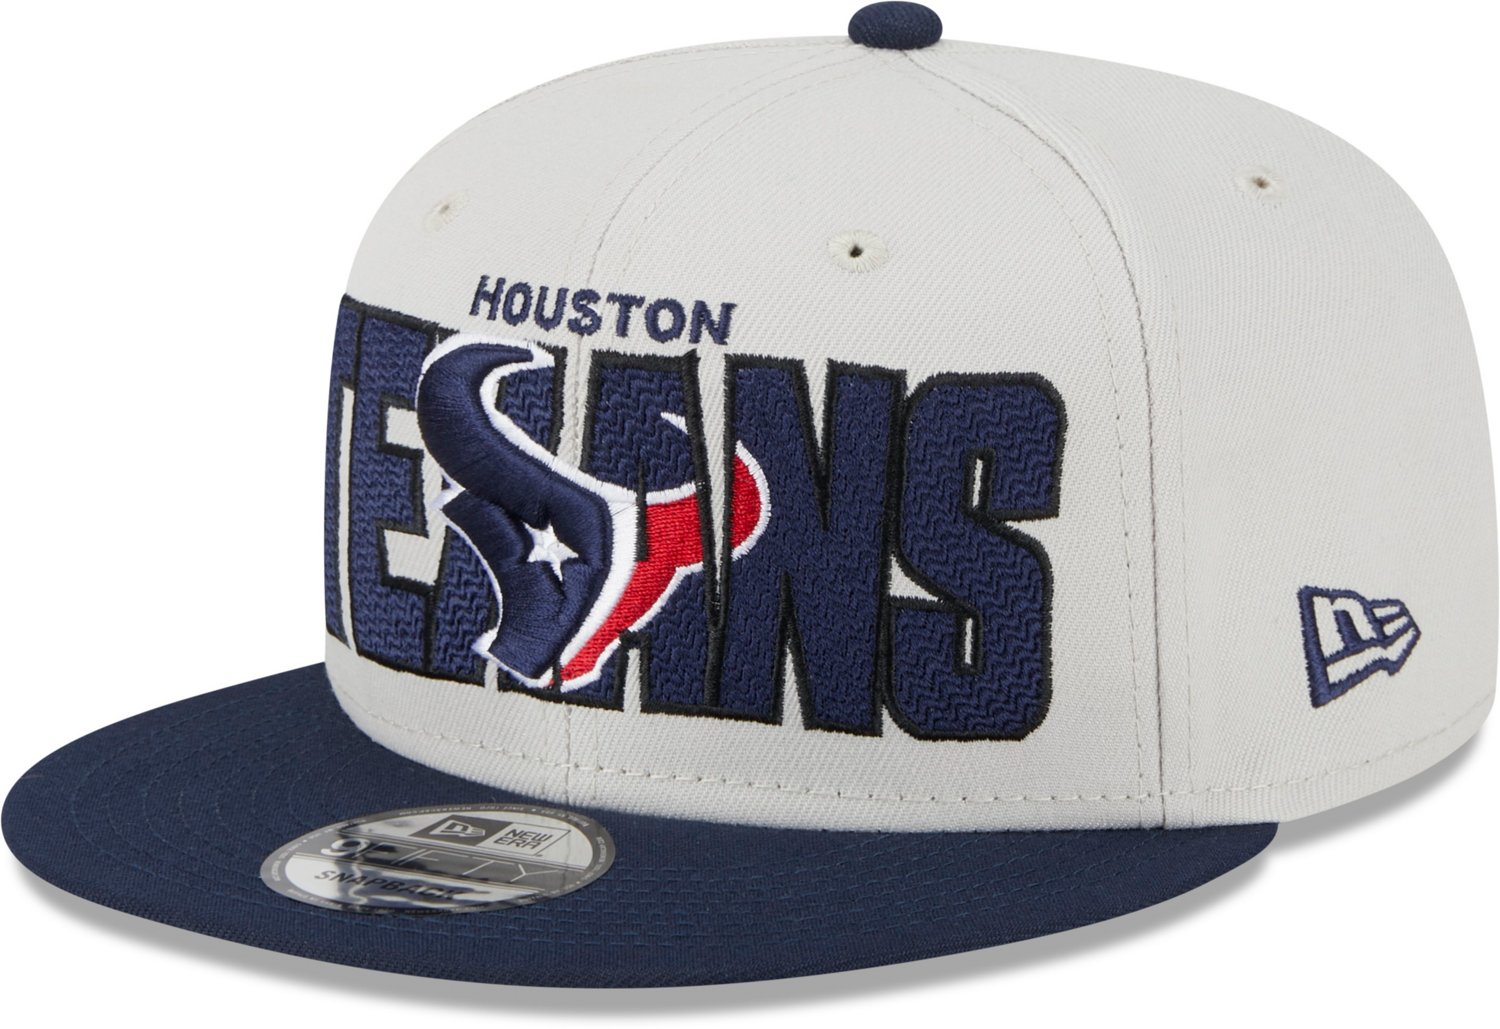 Houston Texans Apparel, Texans Gear, Houston Texans Shop, Store